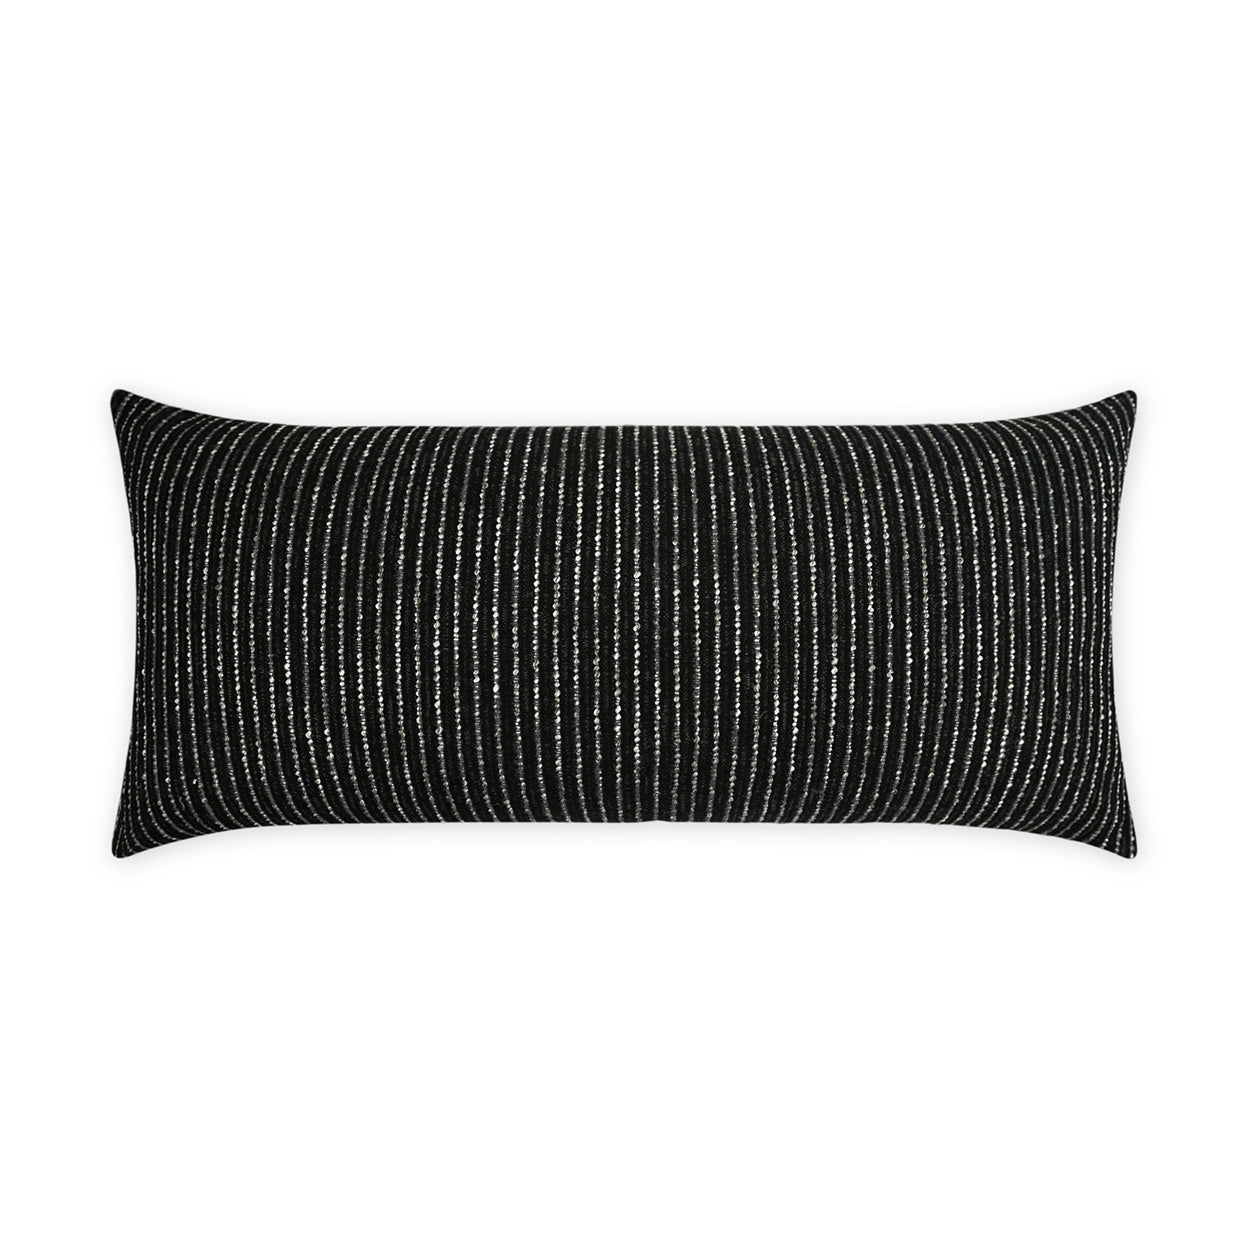 Outdoor Burson Lumbar Pillow - Onyx